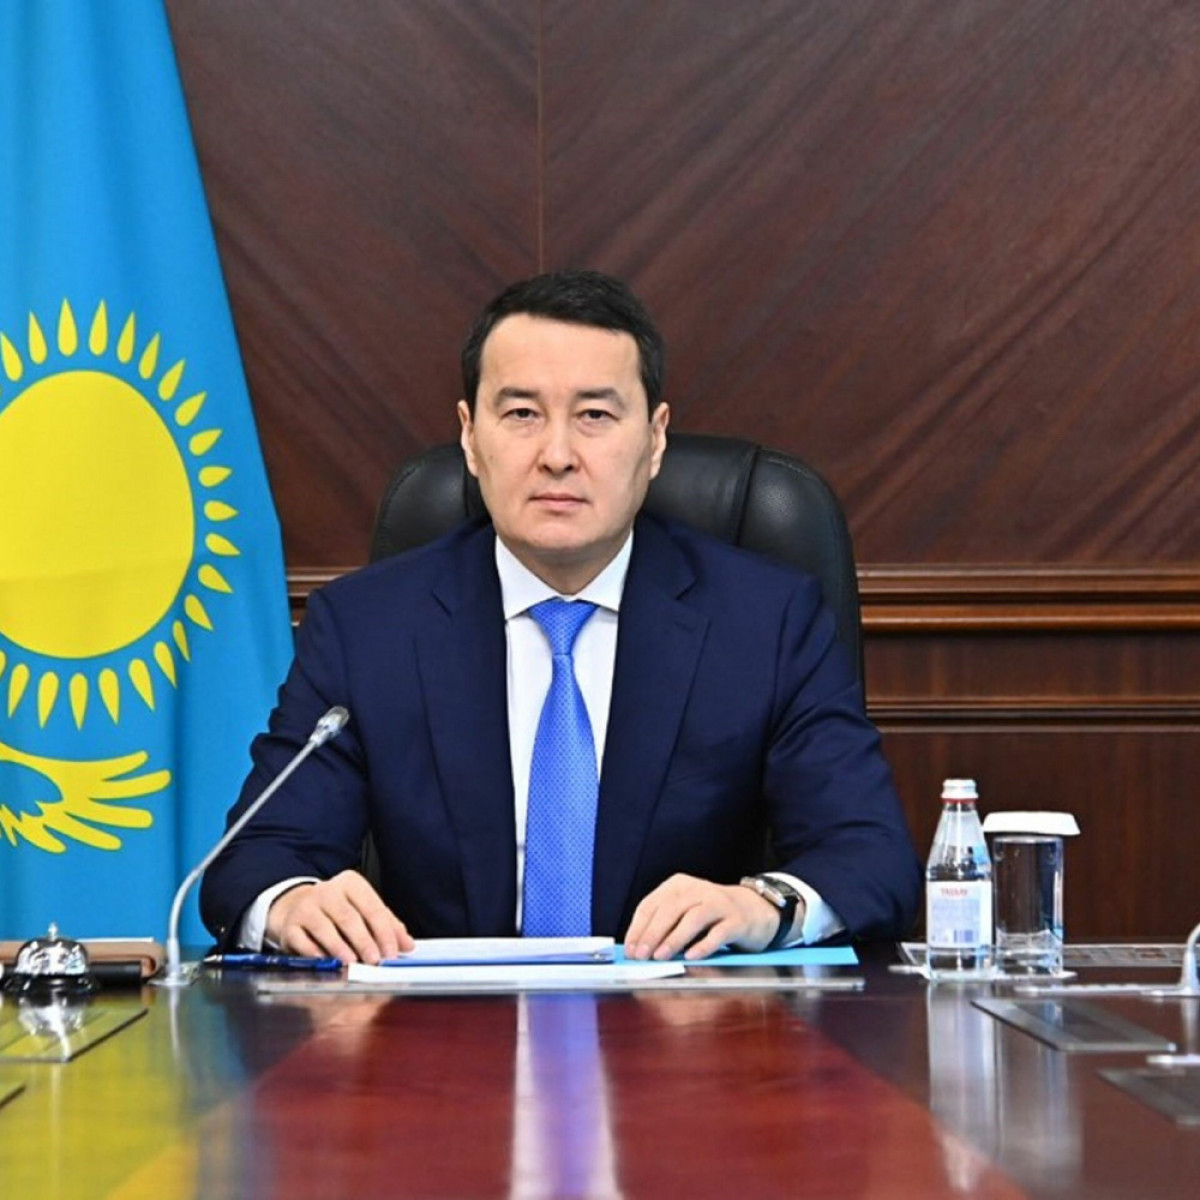 Товарооборот Казахстан-ЕС за первое полугодие составил 20 миллиардов долларов - кабмин